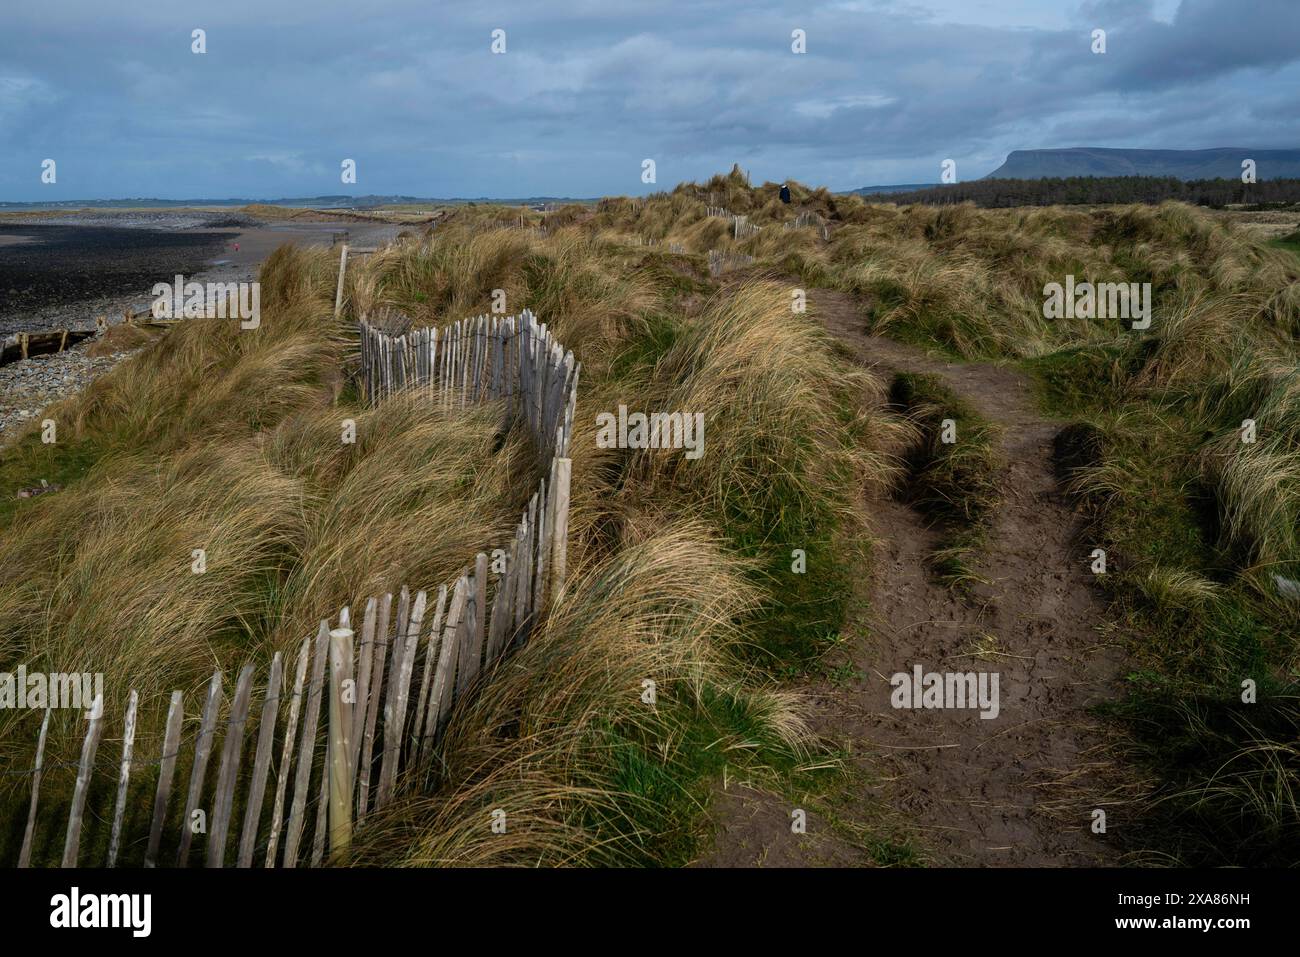 Ein Blick auf die Sanddünen am Strandhill mit Ben Bulben in der Ferne. Sligo, Irland Stockfoto